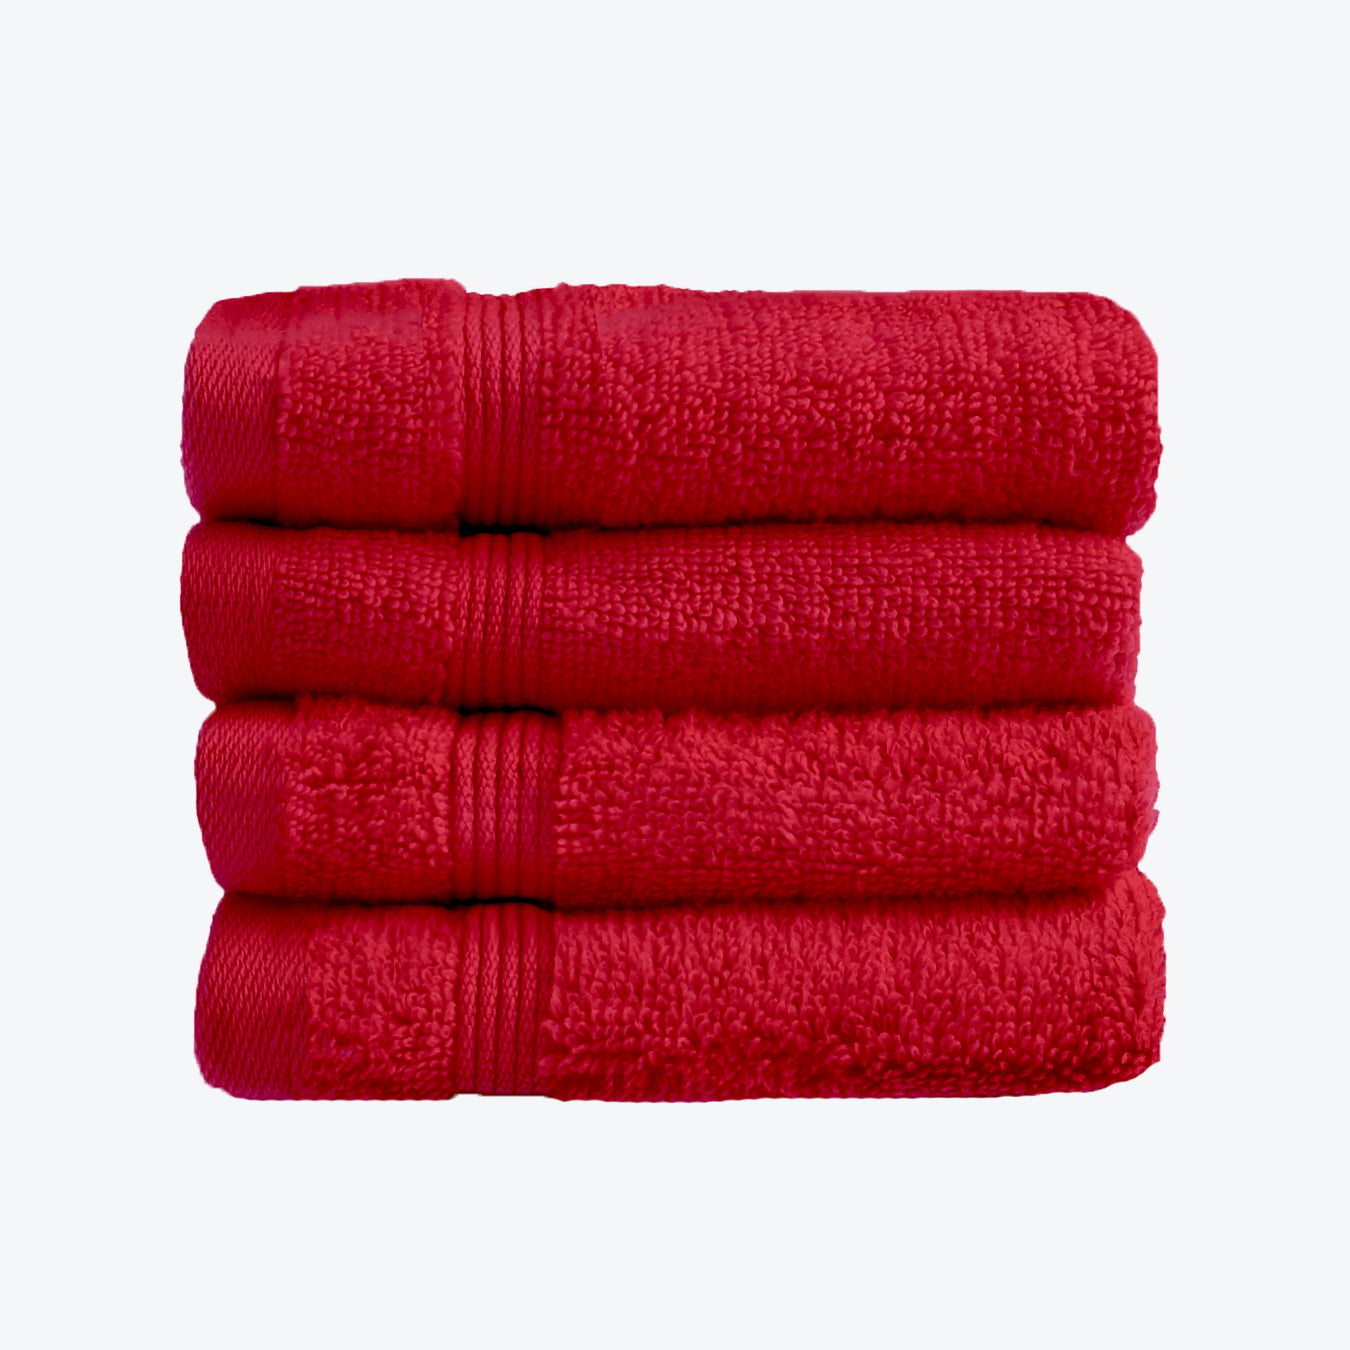 Cranberry Red Egyptian Towels 4pk Face Cloths Set- Premium Zero Twist Cotton Flannels